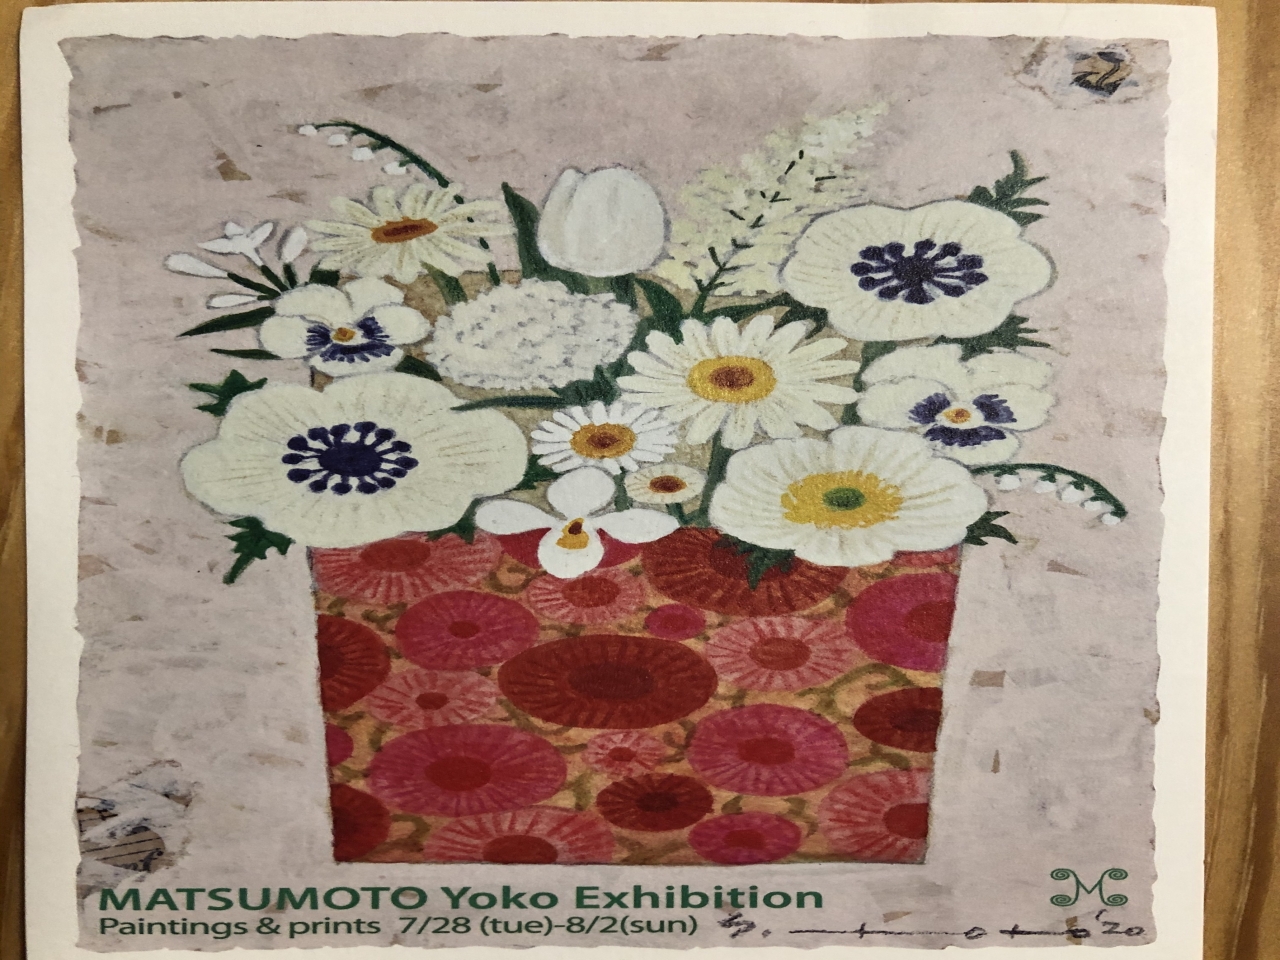 「マツモトヨーコ絵画と、版画と、」展
春、夏、クリスマスの頃に、シェモアの壁を楽しませてもらっている絵
マツモトヨーコさんの絵画展が今月末に、京都で開催されます。
「マツモトヨーコ絵画と、版画と、」展です。
２０２０年７月２８日（火）～８月２日（日）　１２：００～１８：００
ギャラリーモーニング
三条通り岡崎広道　南北角　075-771-1213

